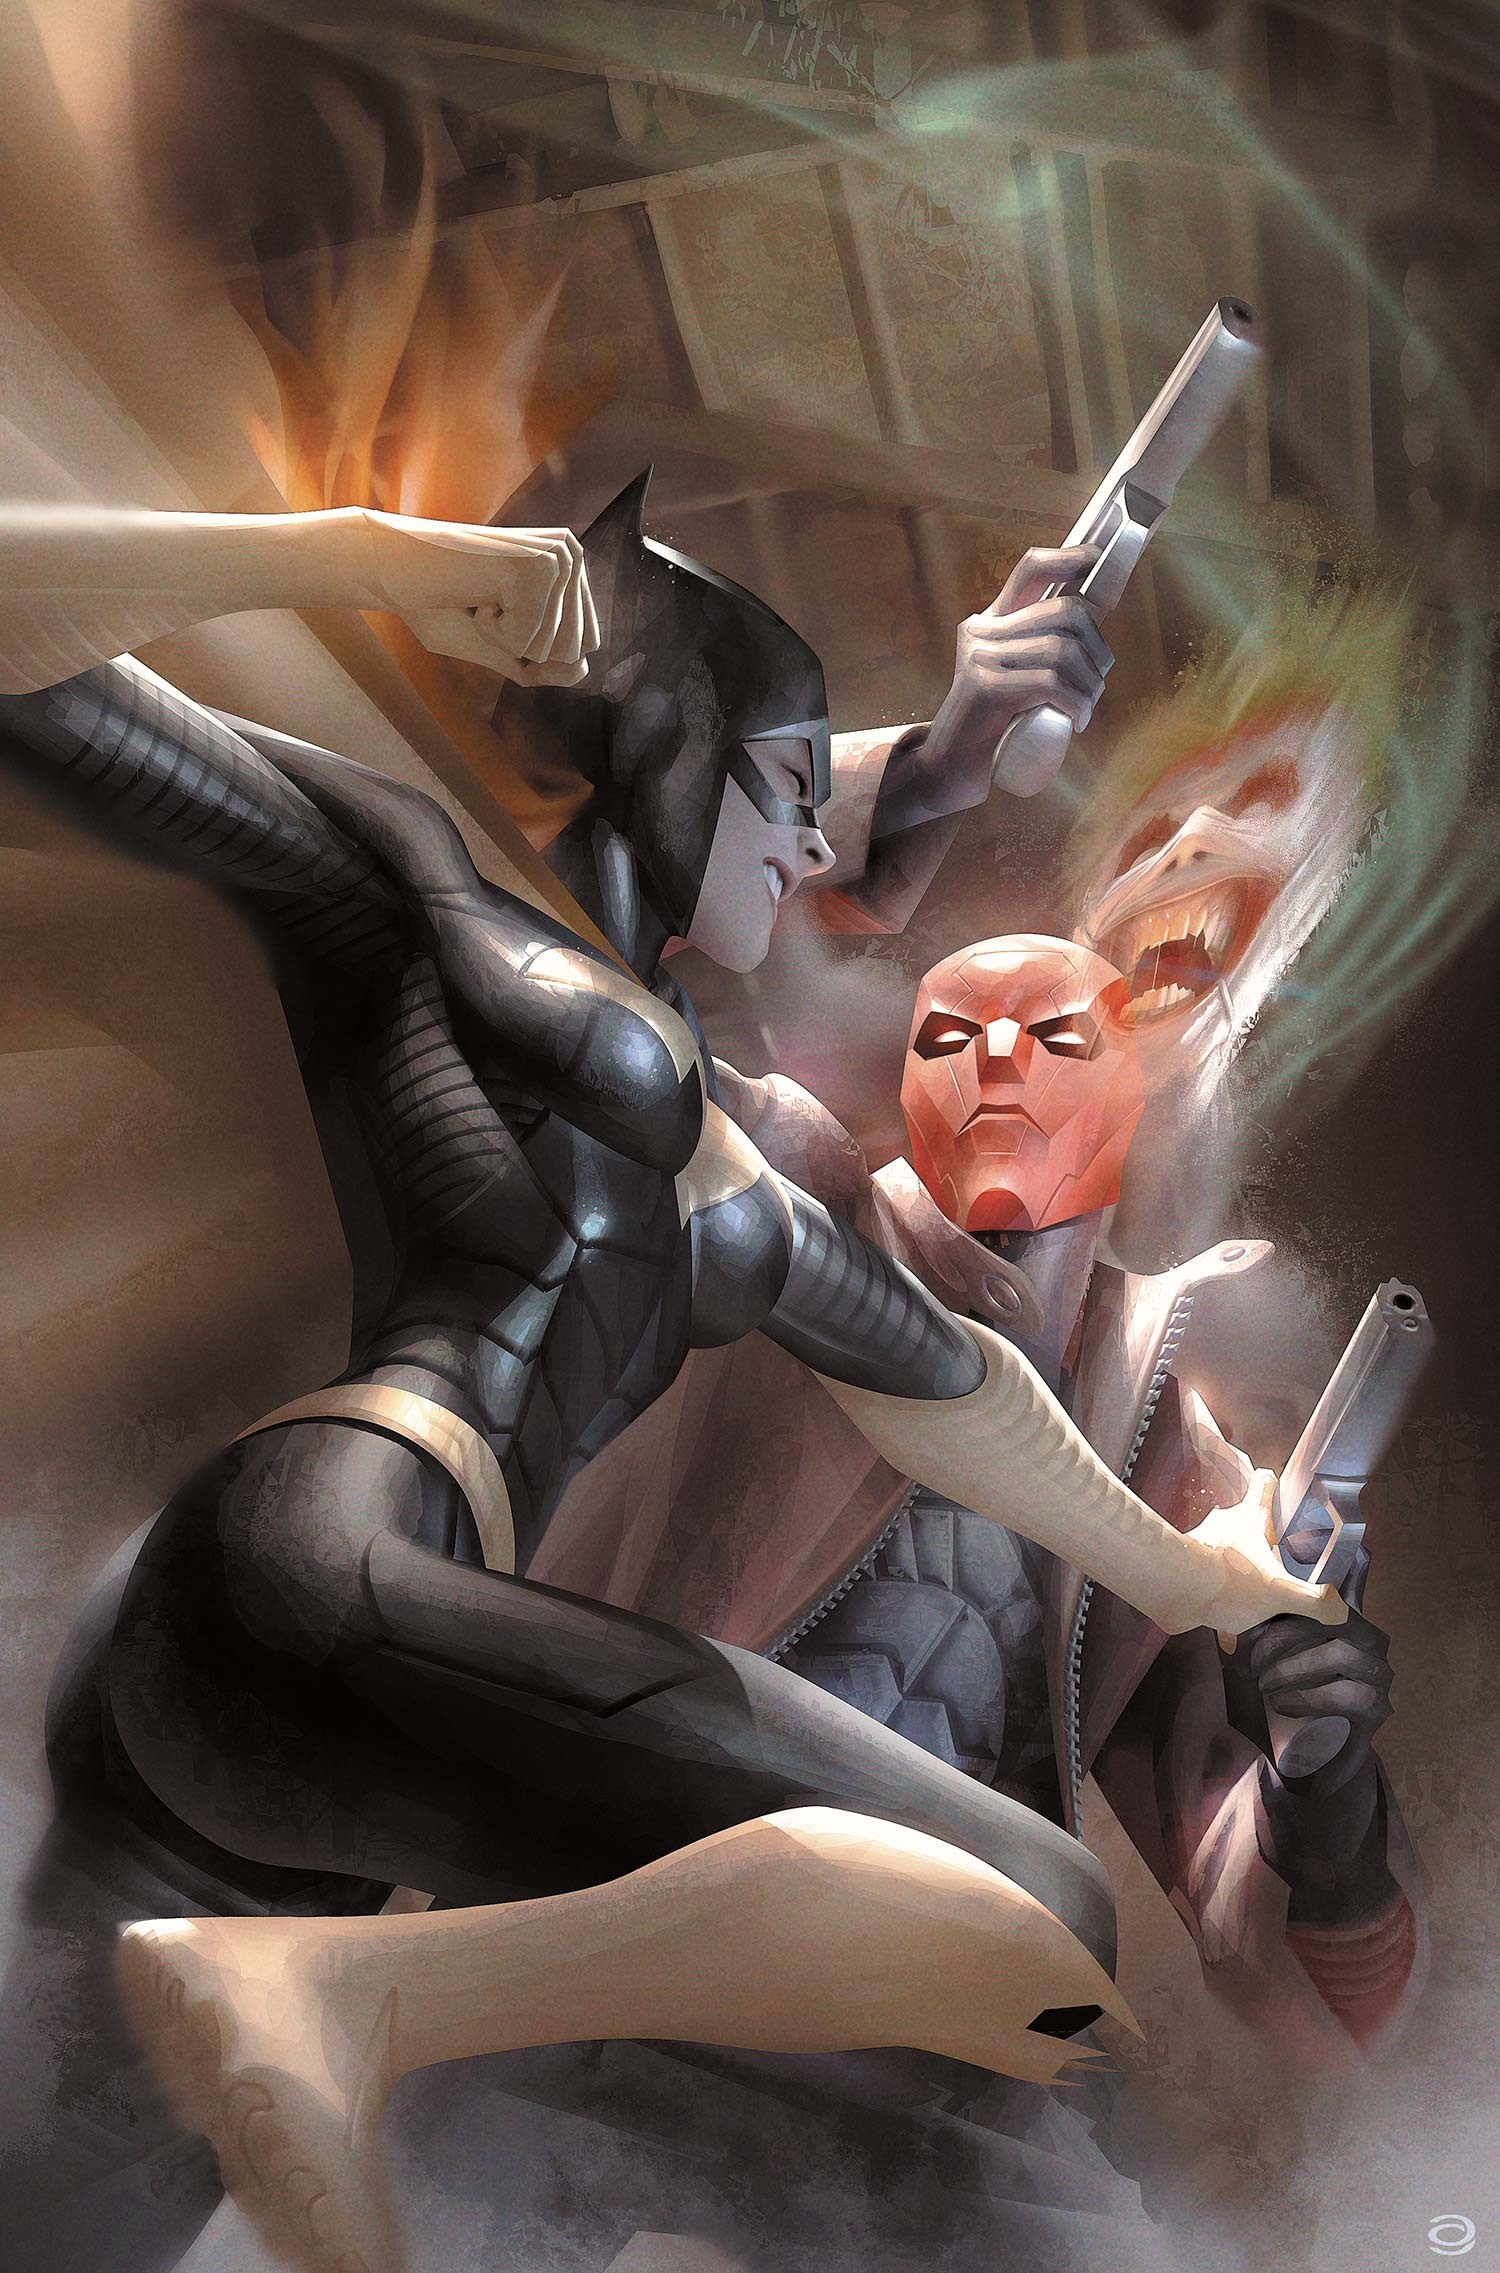 General 1500x2273 Batgirl superheroines fantasy girl comic art DC Comics gun weapon low-angle fighting dual wield Catwoman